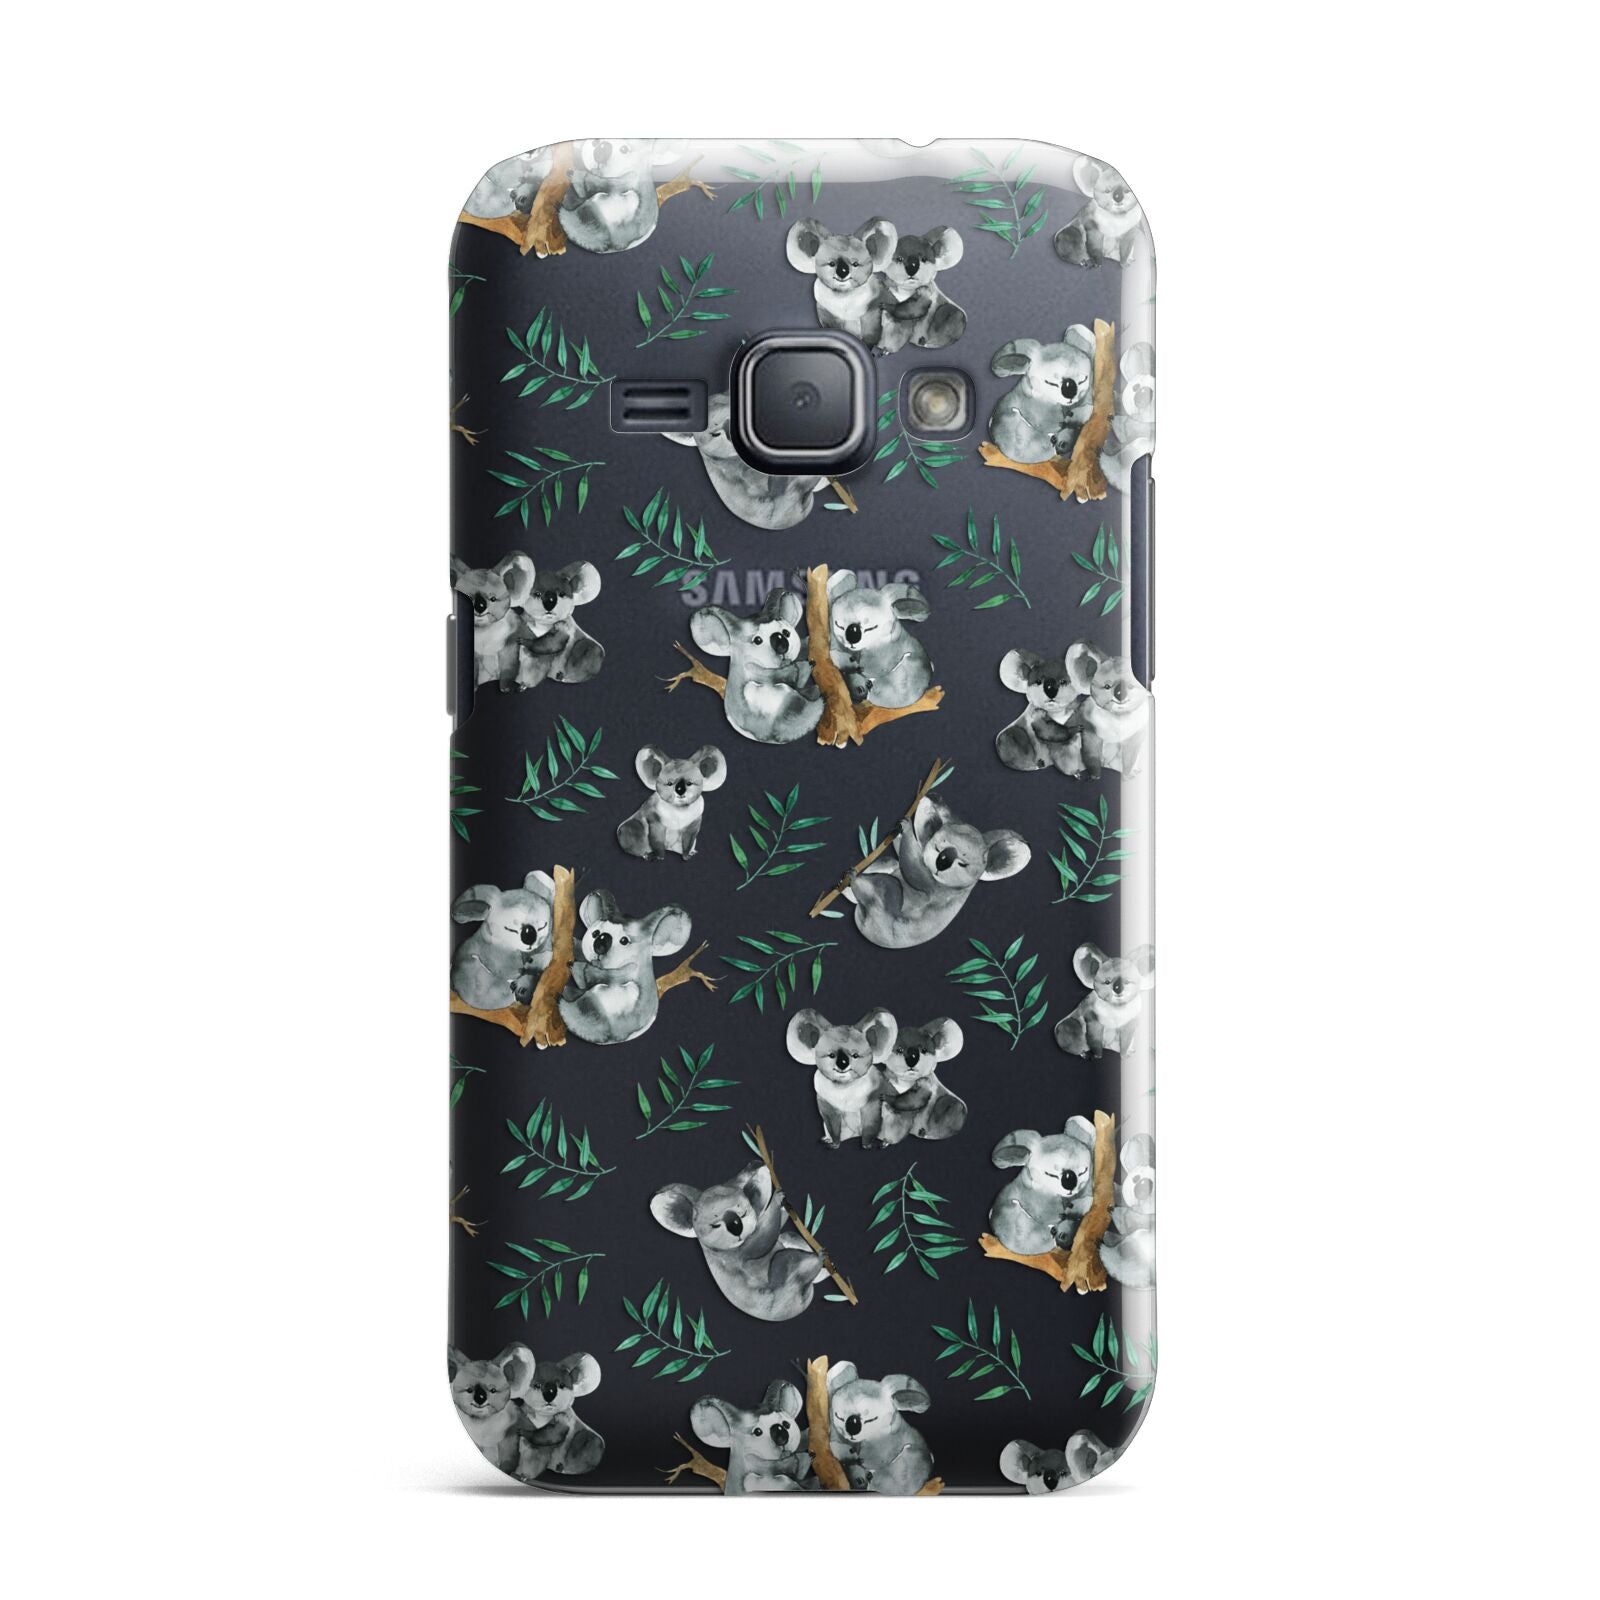 Koala Bear Samsung Galaxy J1 2016 Case